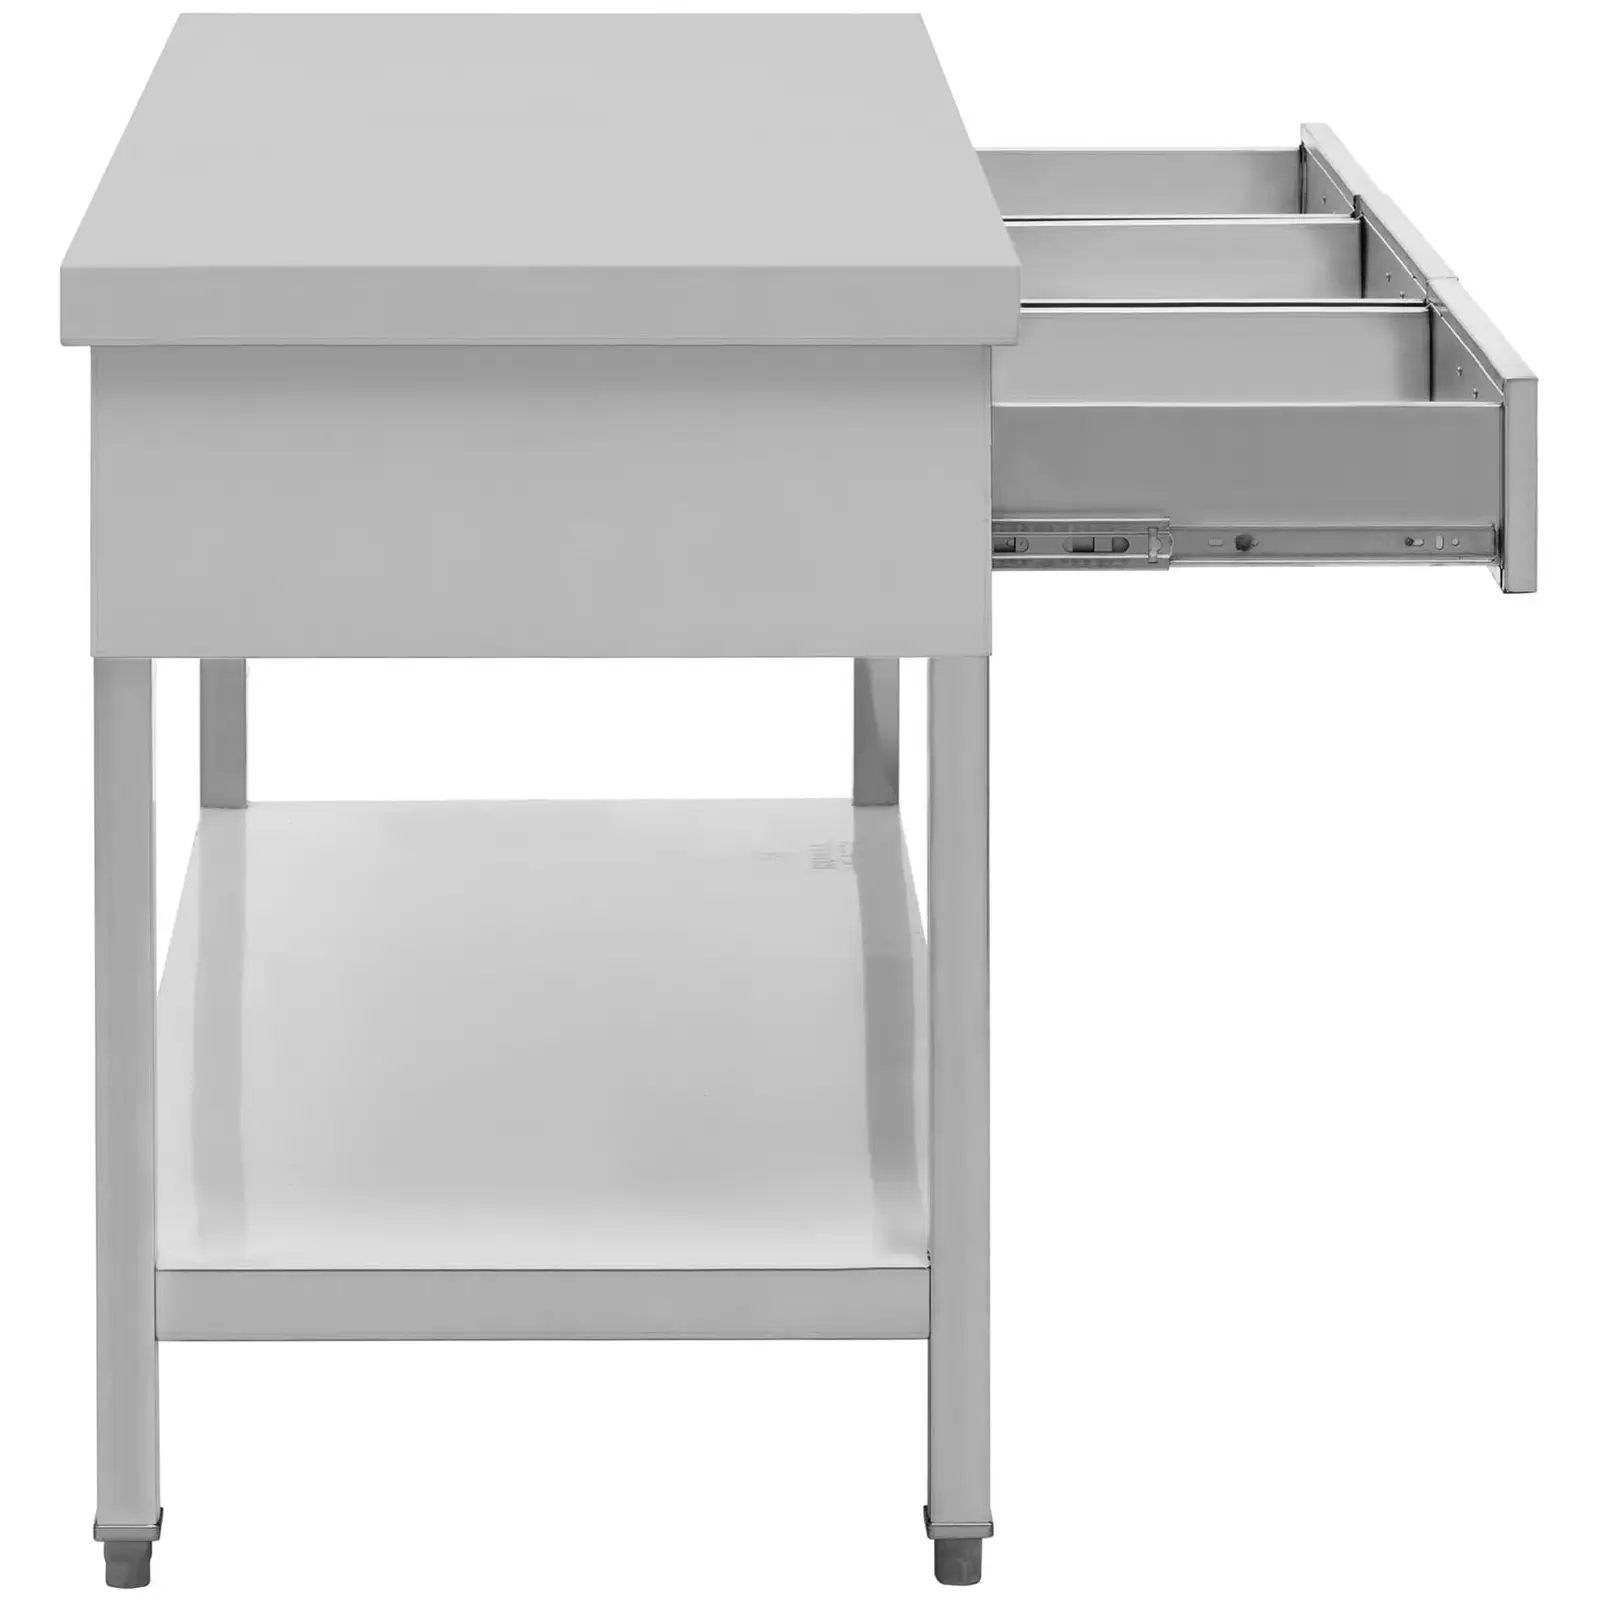 Table de travail avec tiroirs - 150 x 60 cm - 295 kg